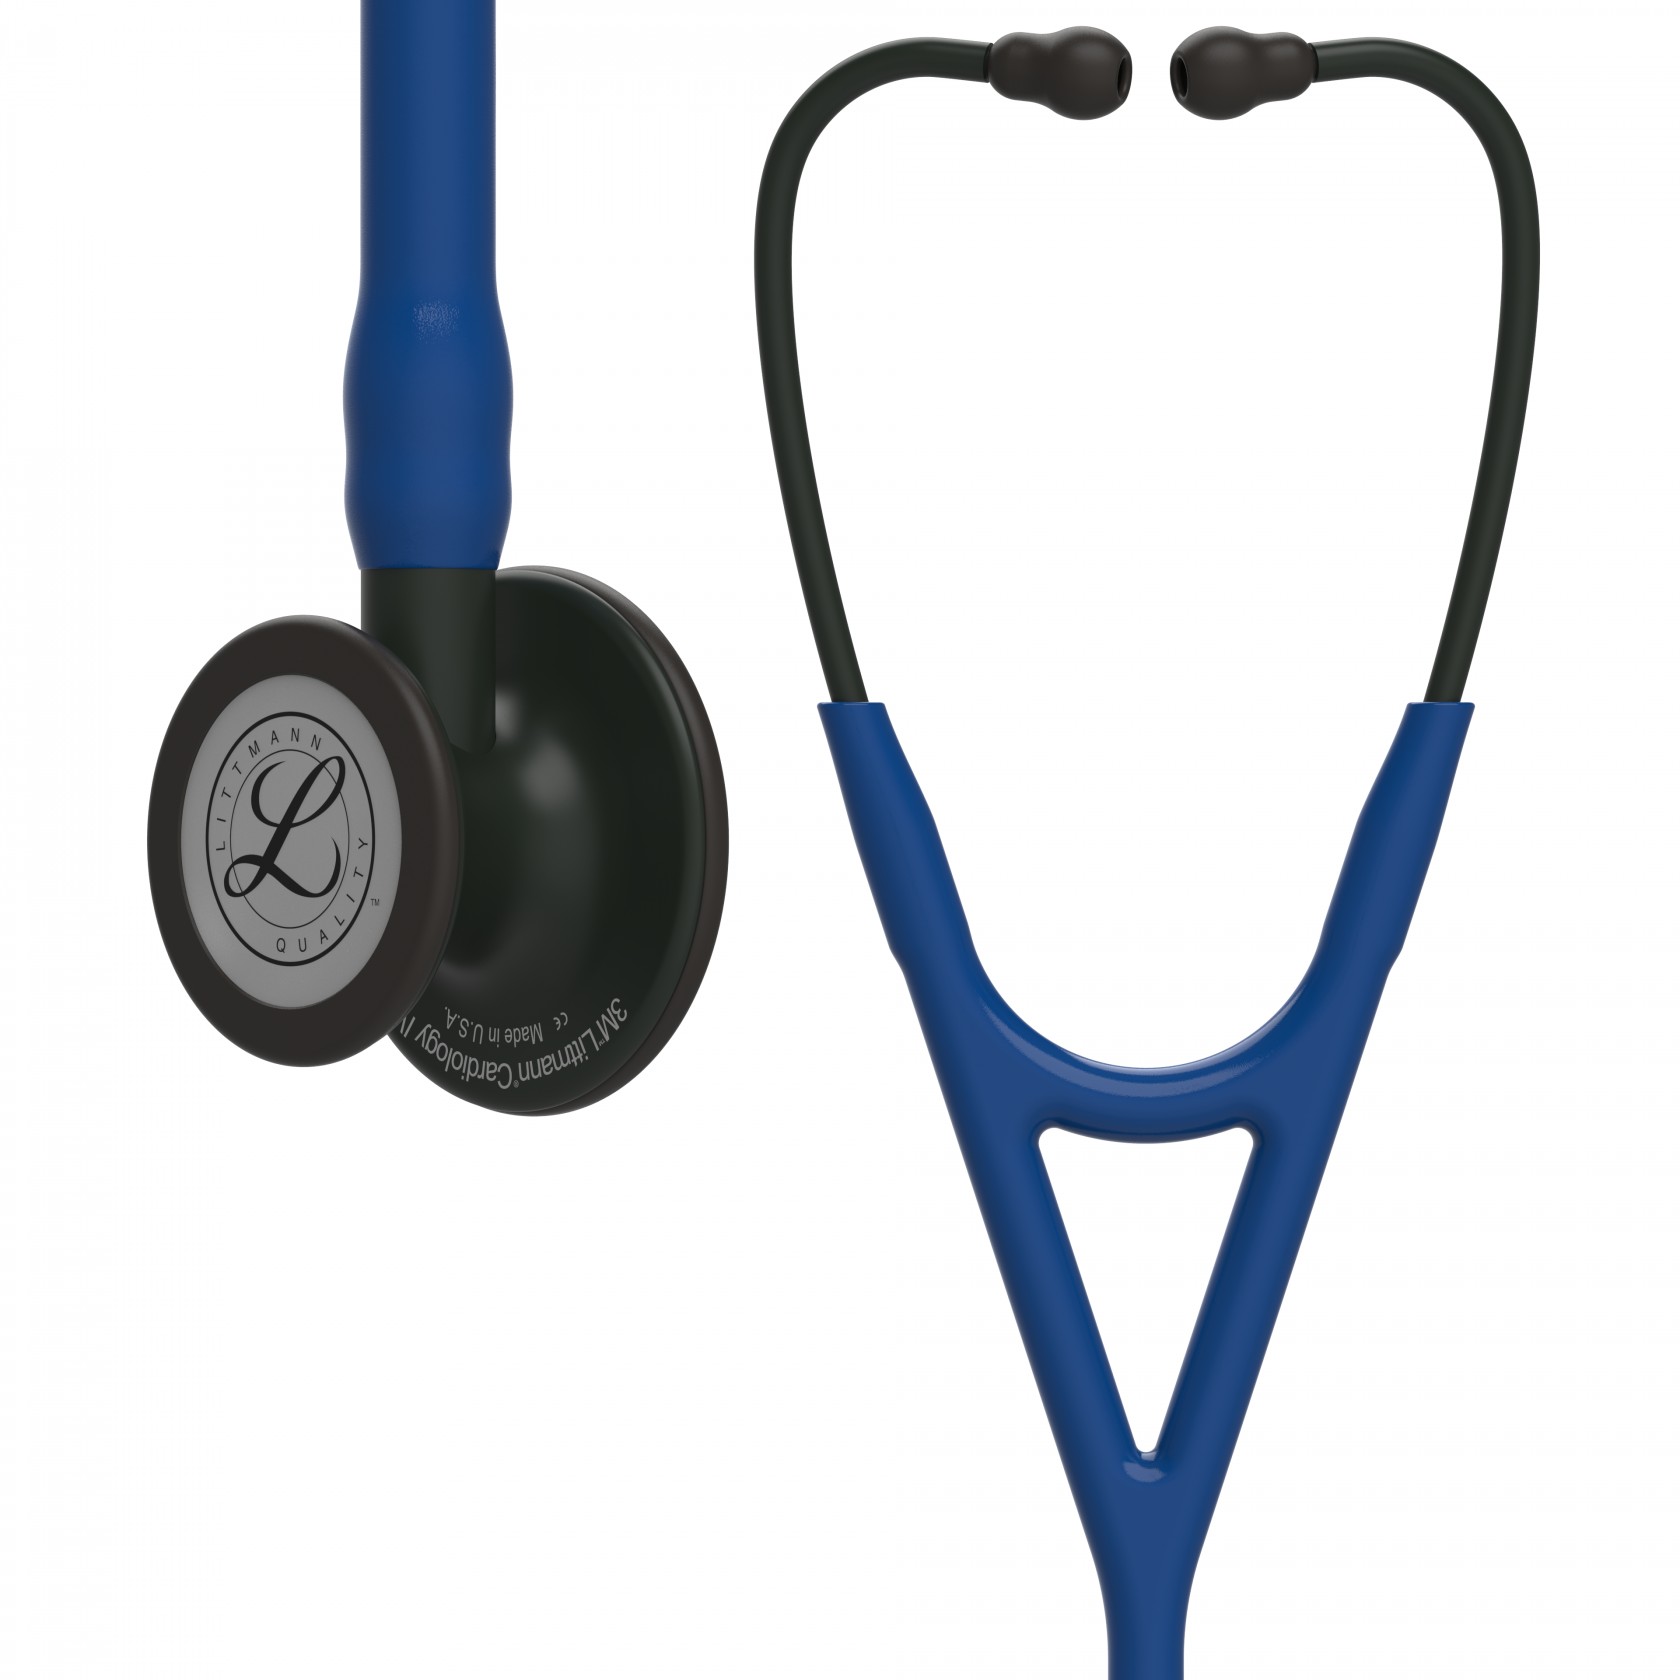 3M Stethoscope Littmann Cardiology IV Navy Blue with Black Finish image 1